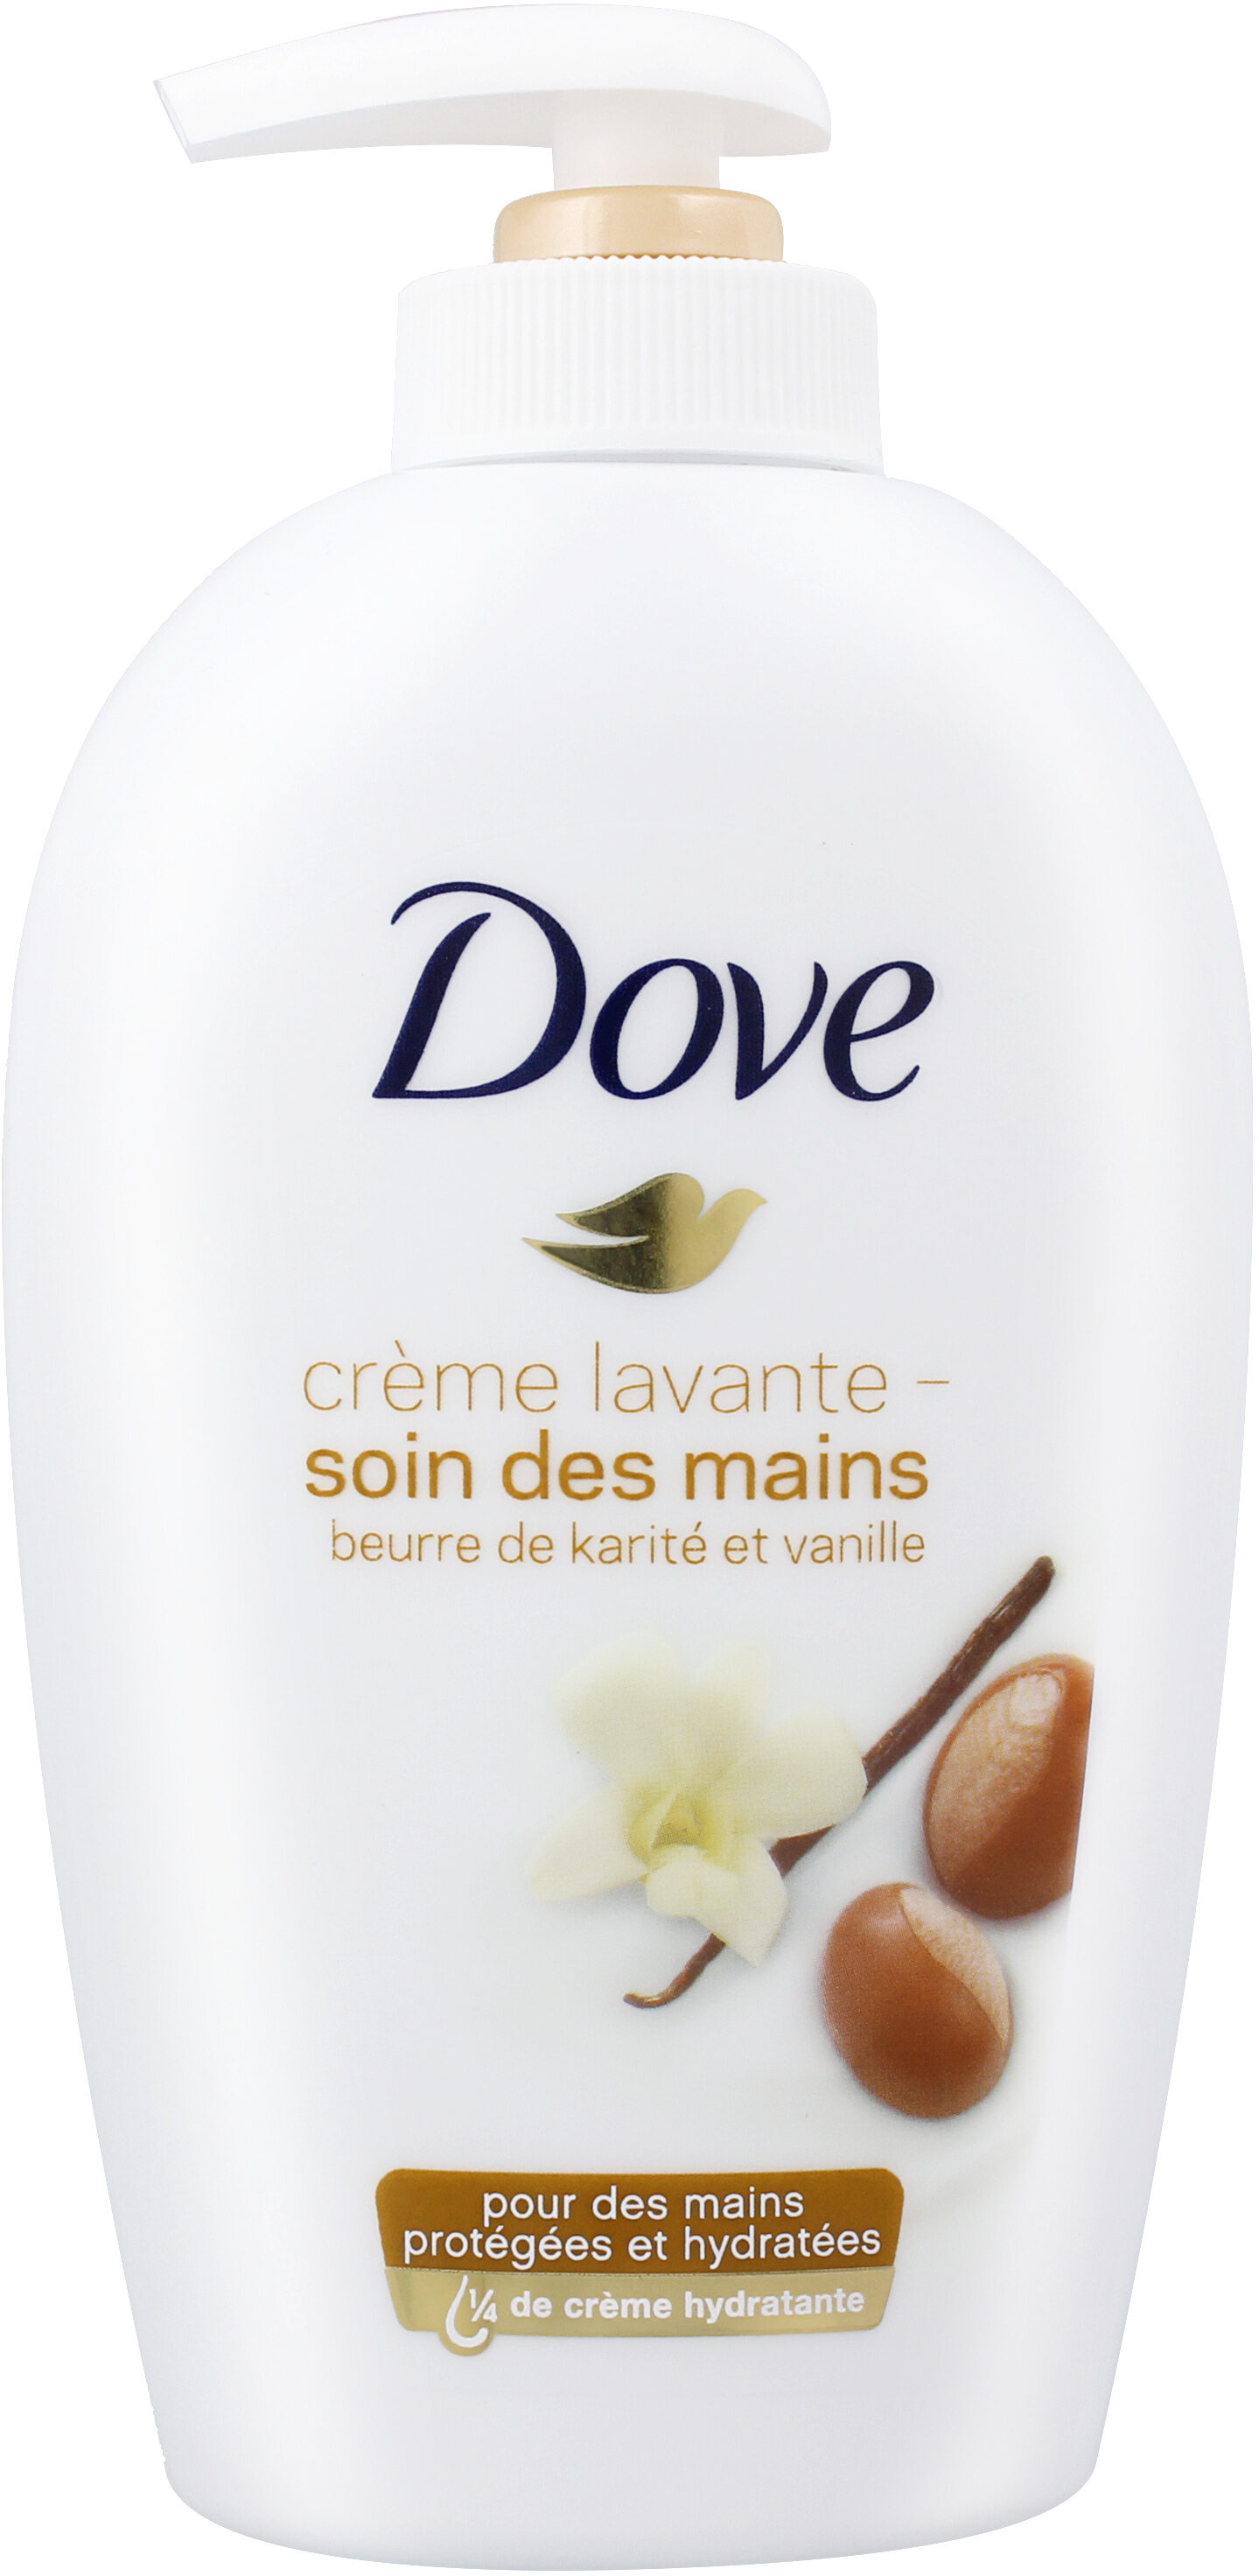 Dove Crème Lavante Pompe Karité et Vanille - Product - fr